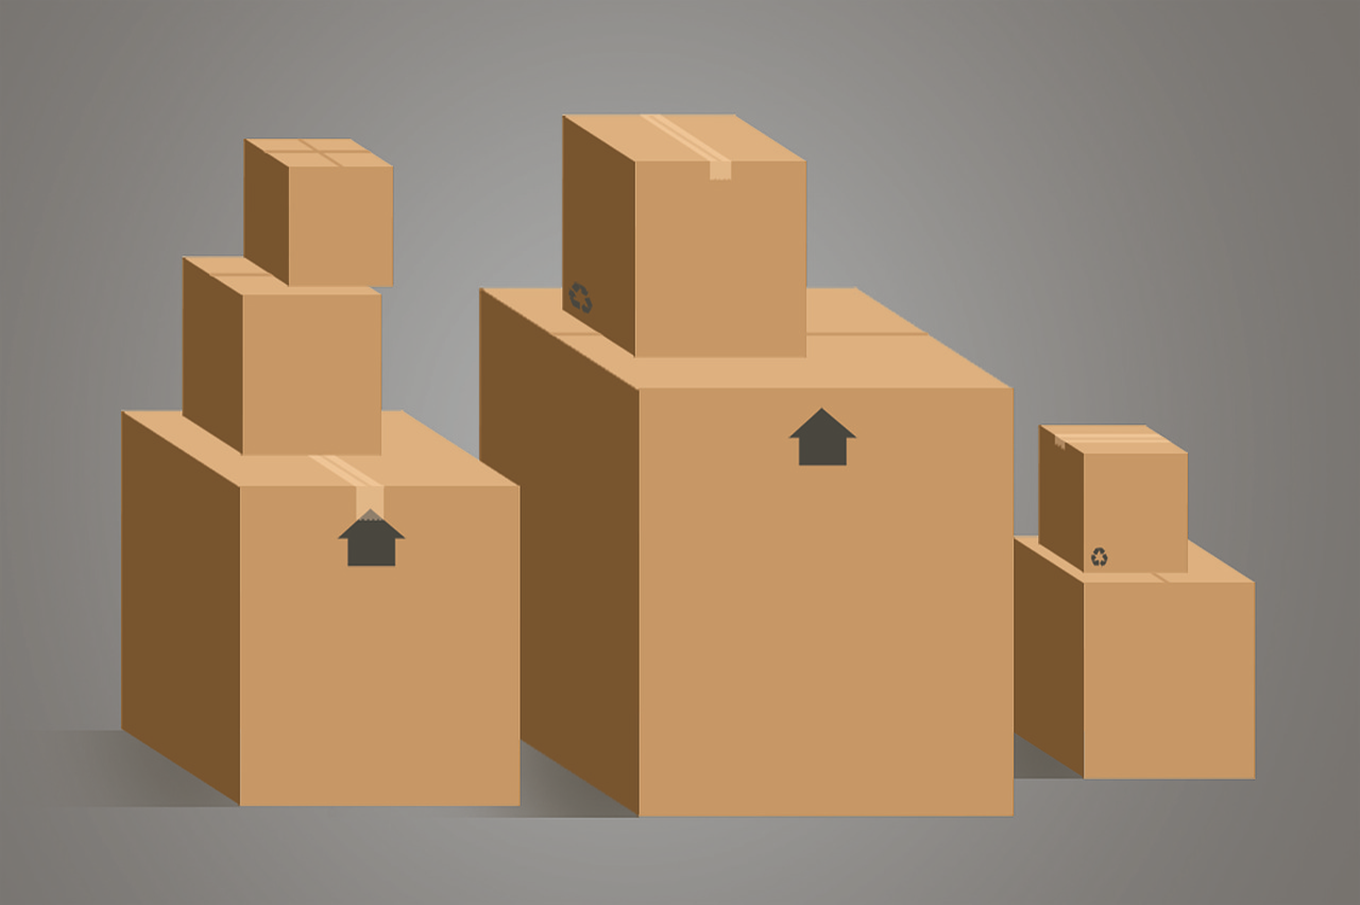 Image d'illustration de cartons de déménagement